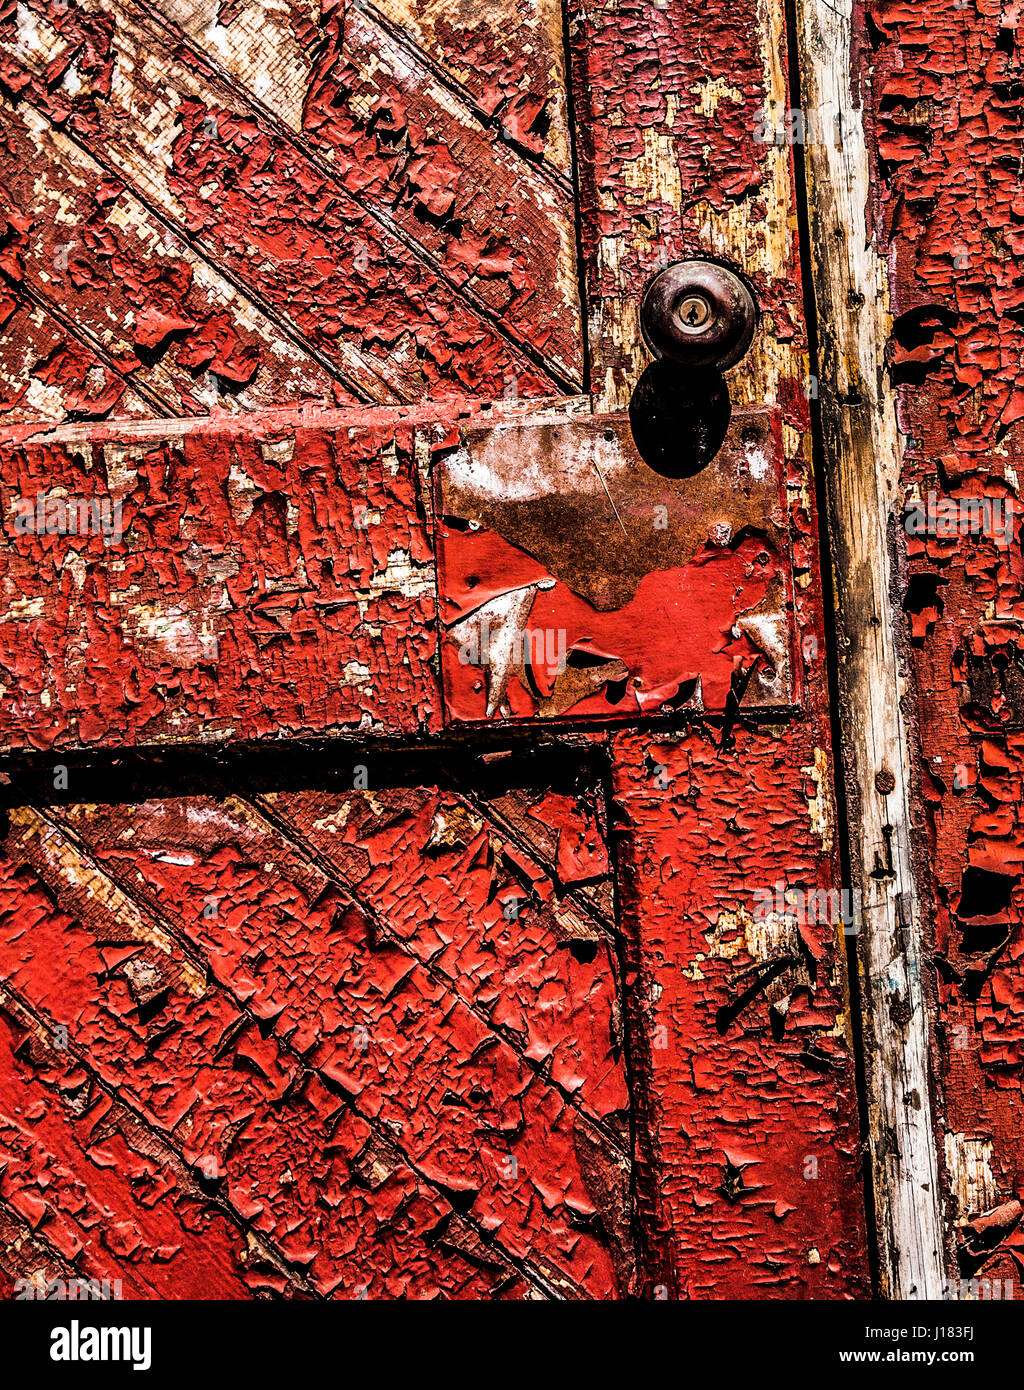 Alte rote Farbe vintage Holz Haustür PT abstrakt mit abblätternder Farbe, New Jersey, USA, US-Türknauf, hinter geschlossenen Türen, FS 18,82MB 300ppi Stockfoto